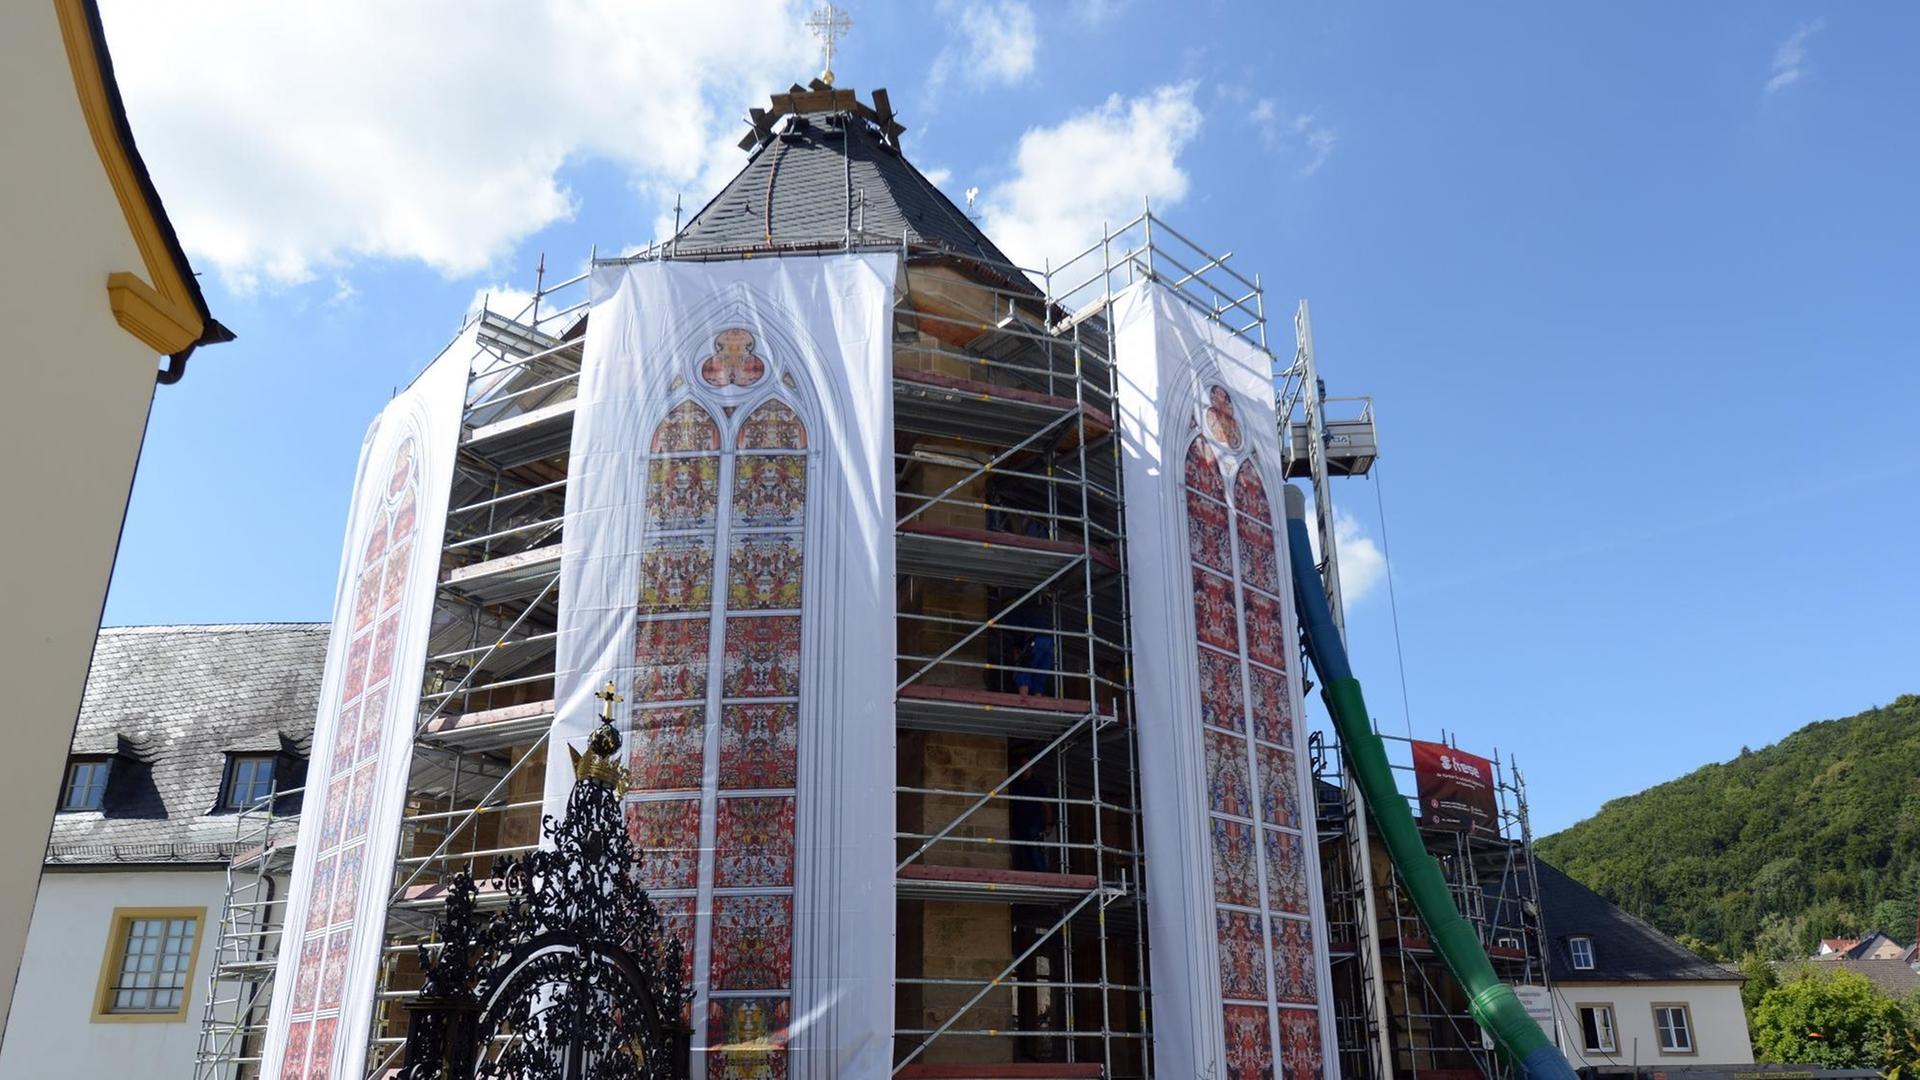 Das Foto zeigt die Kirche von Tholey. Als Fahne hängen die Fenster von Gerhard Richter von dem Gebäude herunter.